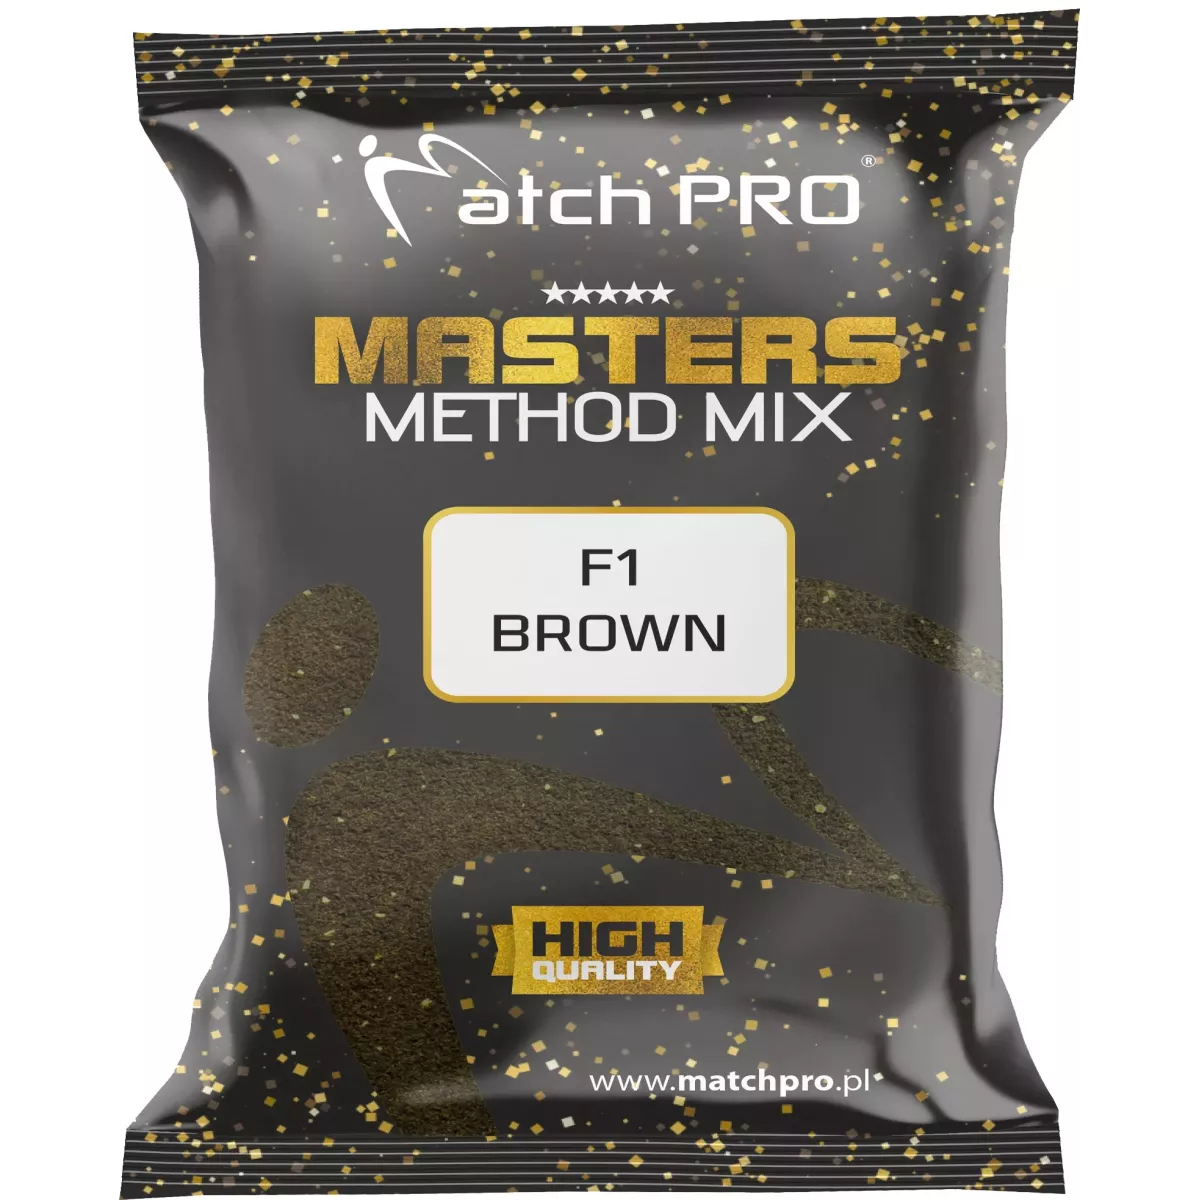 Zanęta MatchPro Method Mix Masters 700g - F1 BROWN